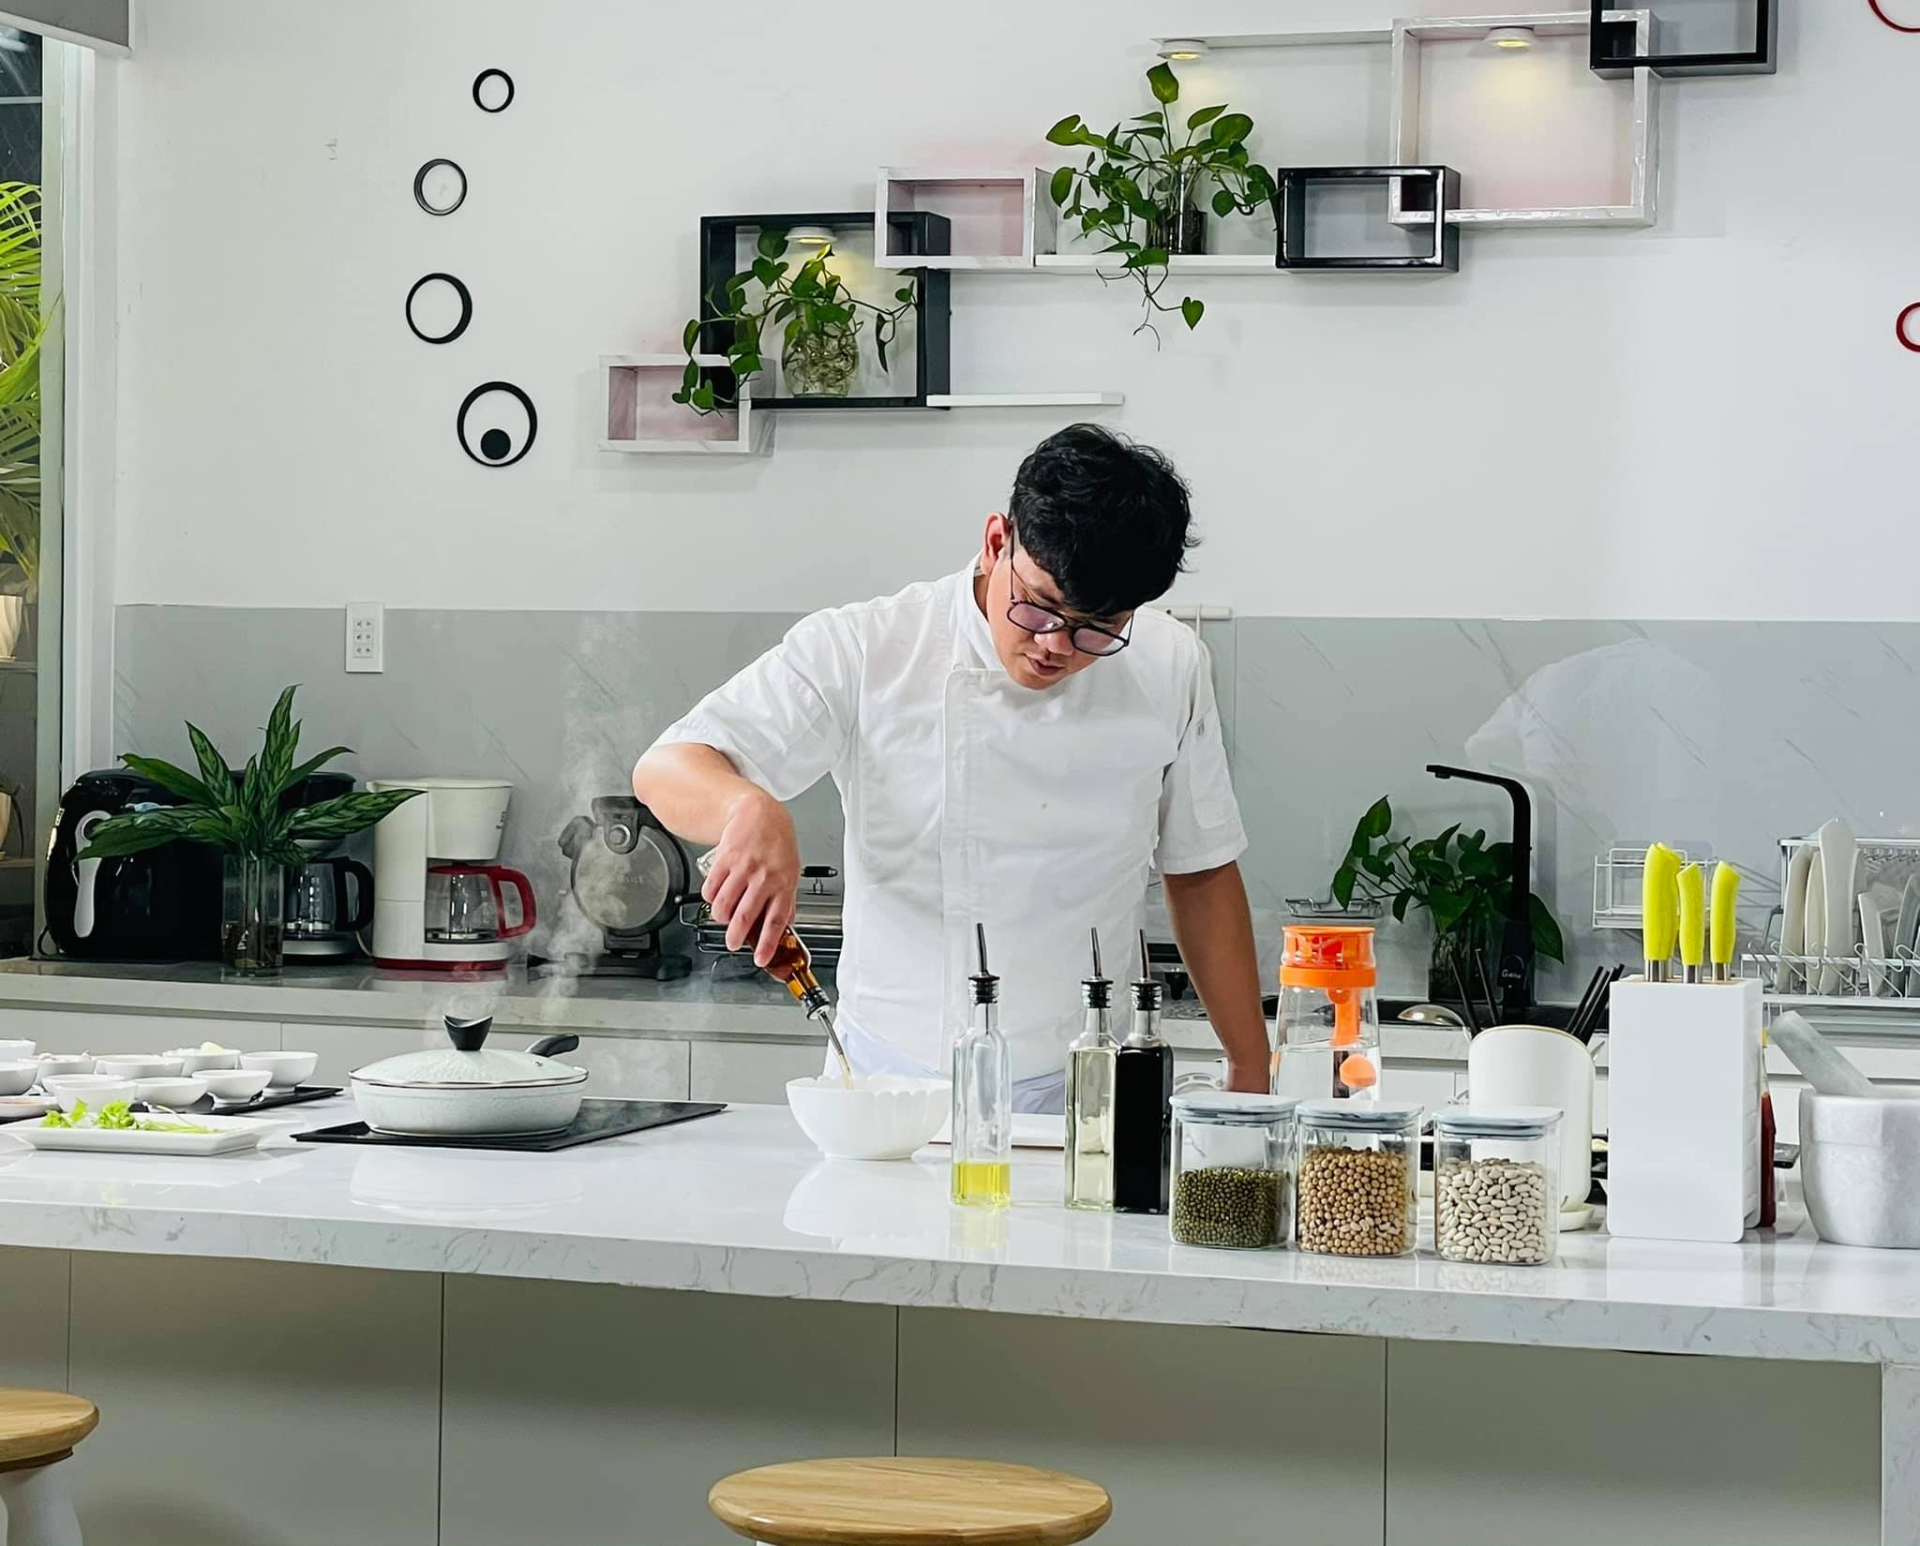 Đầu bếp Nguyễn Quốc Nghị: Muốn thành công với nghề bếp cần phải đặt cái “tâm” của mình vào từng món ăn - ảnh 1